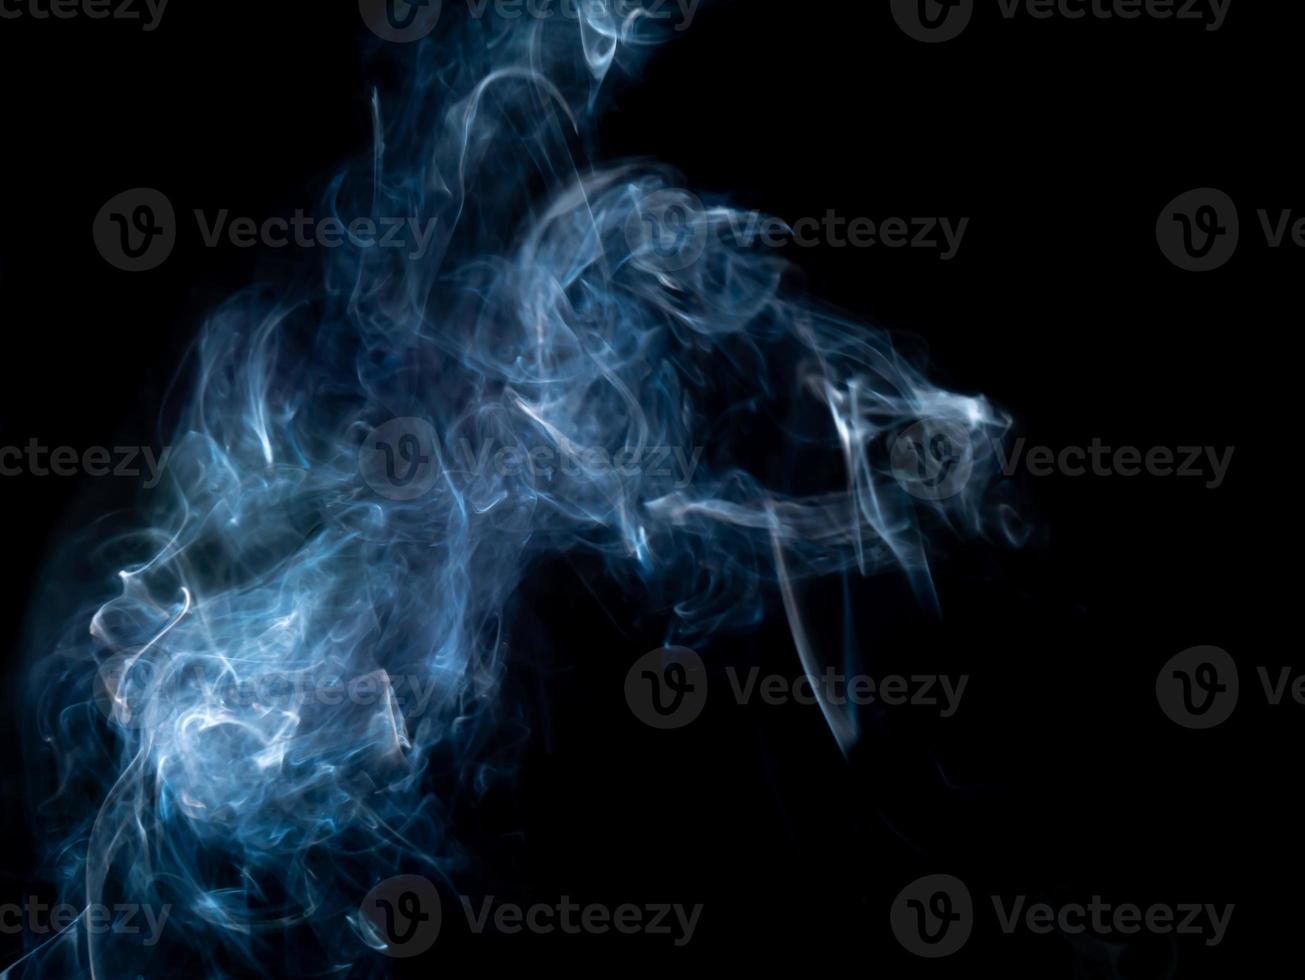 texture fumée sur fond noir photo